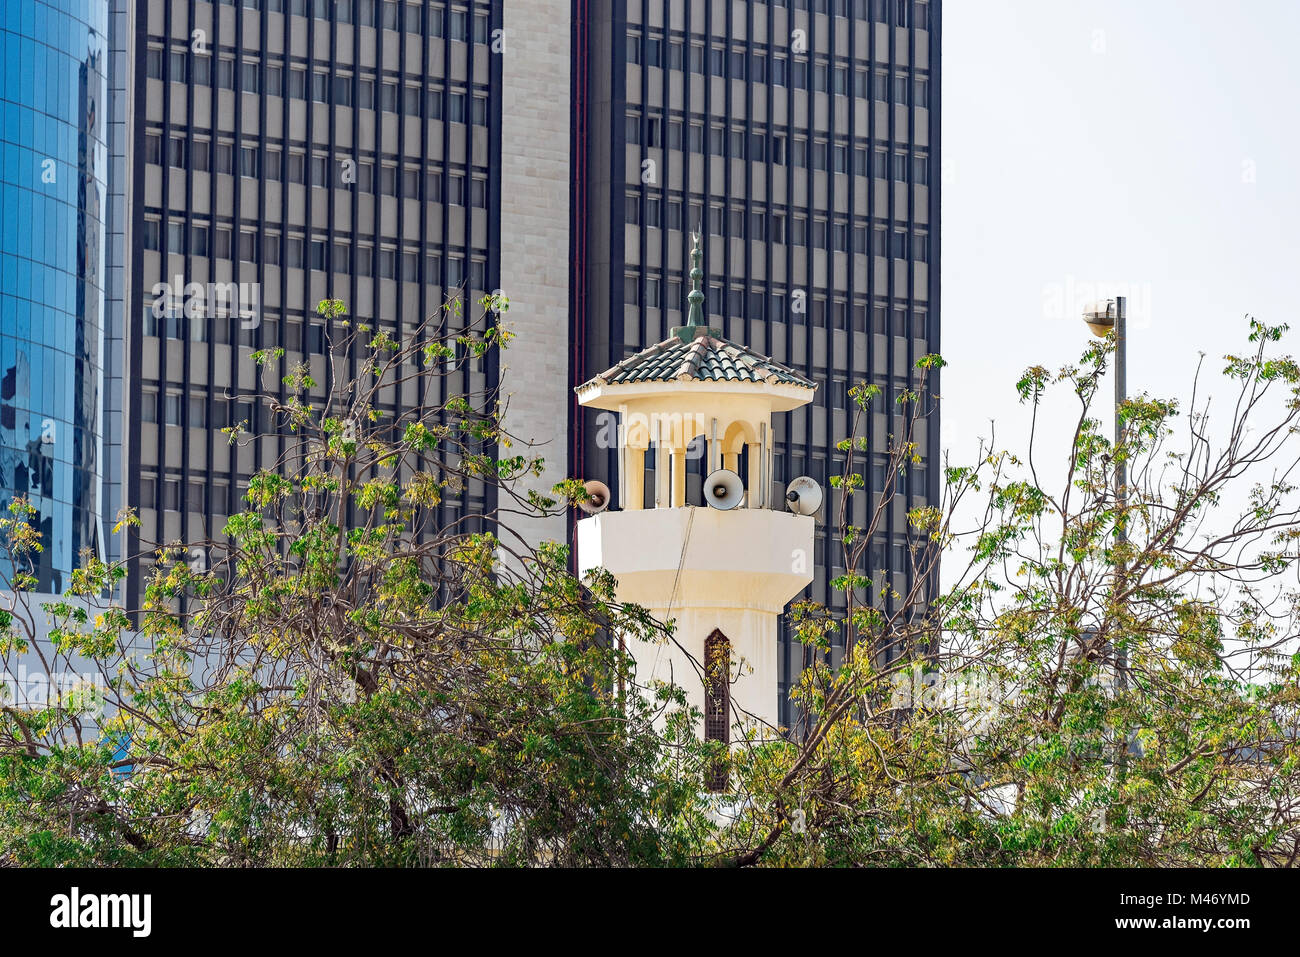 Un appel à la prière. La tour de la mosquée en contraste avec les immeubles de bureaux modernes, Jeddah, Arabie saoudite. Banque D'Images